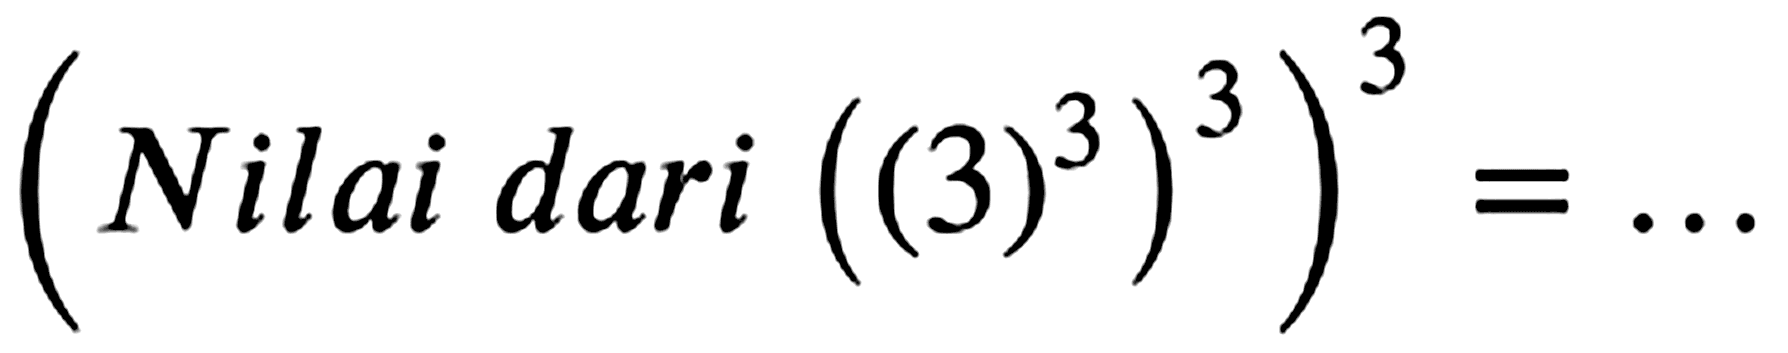 ( { Nilai dari )((3)^(3))^(3))^(3)=...